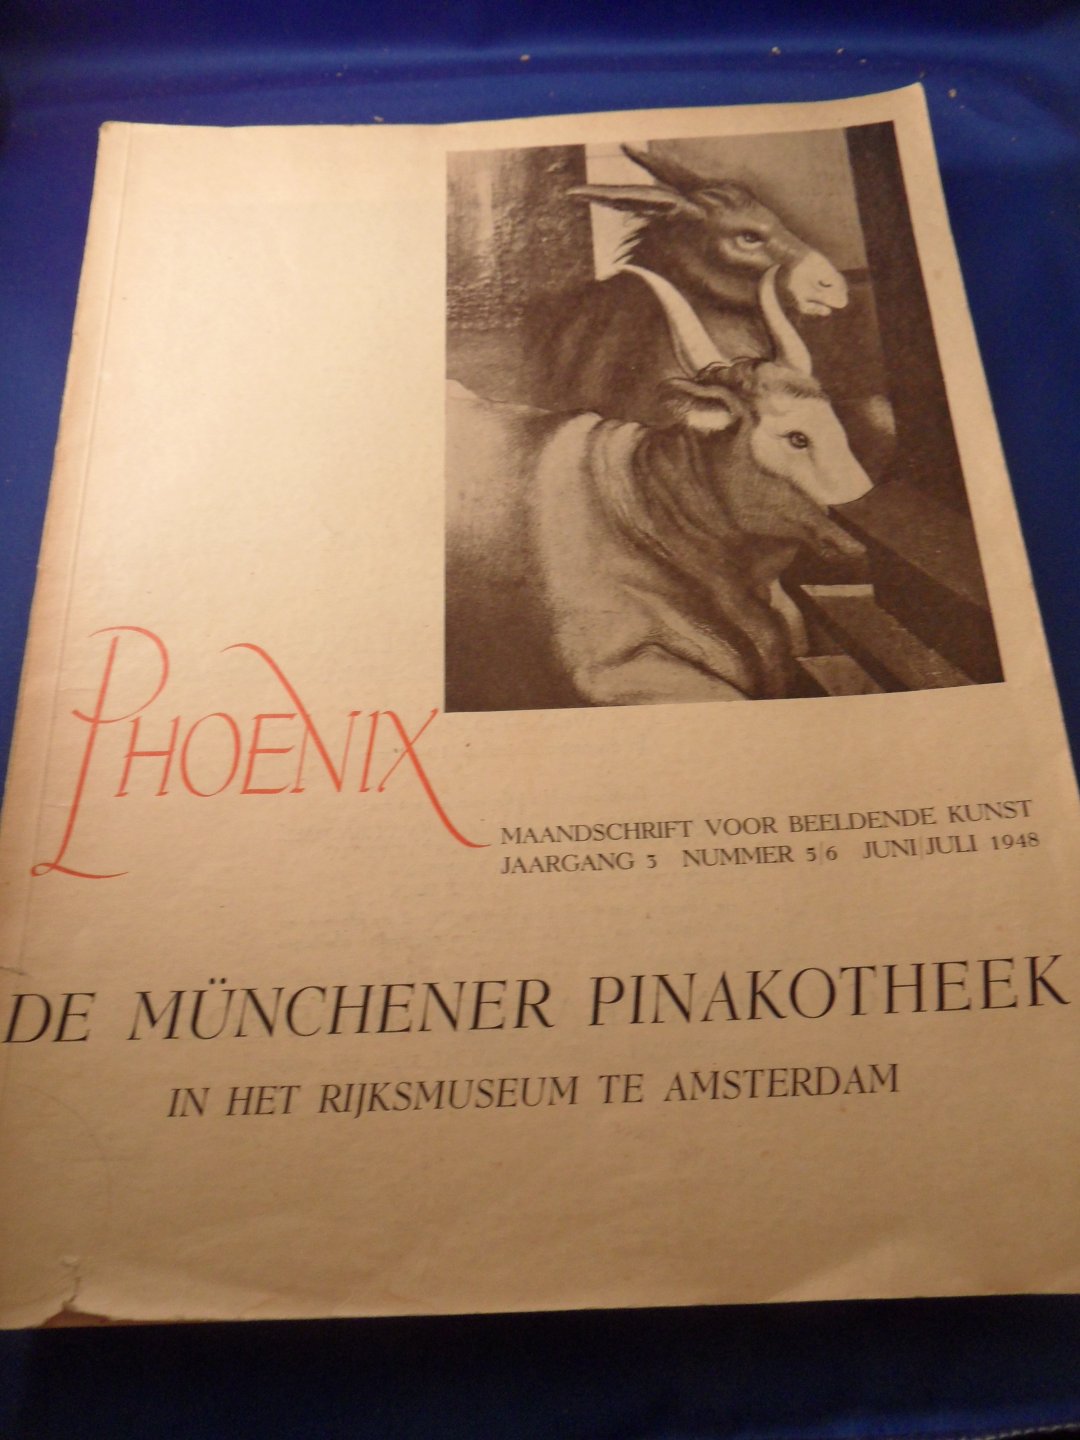 Rijksmuseum Amsterdam - Phoenix, maandschrift voor beeldende kunst. De Münchener Pinakotheek in het rijksmuseum te amsterdam. Jaargang 3, nummer 5/6 juni/juli 1948